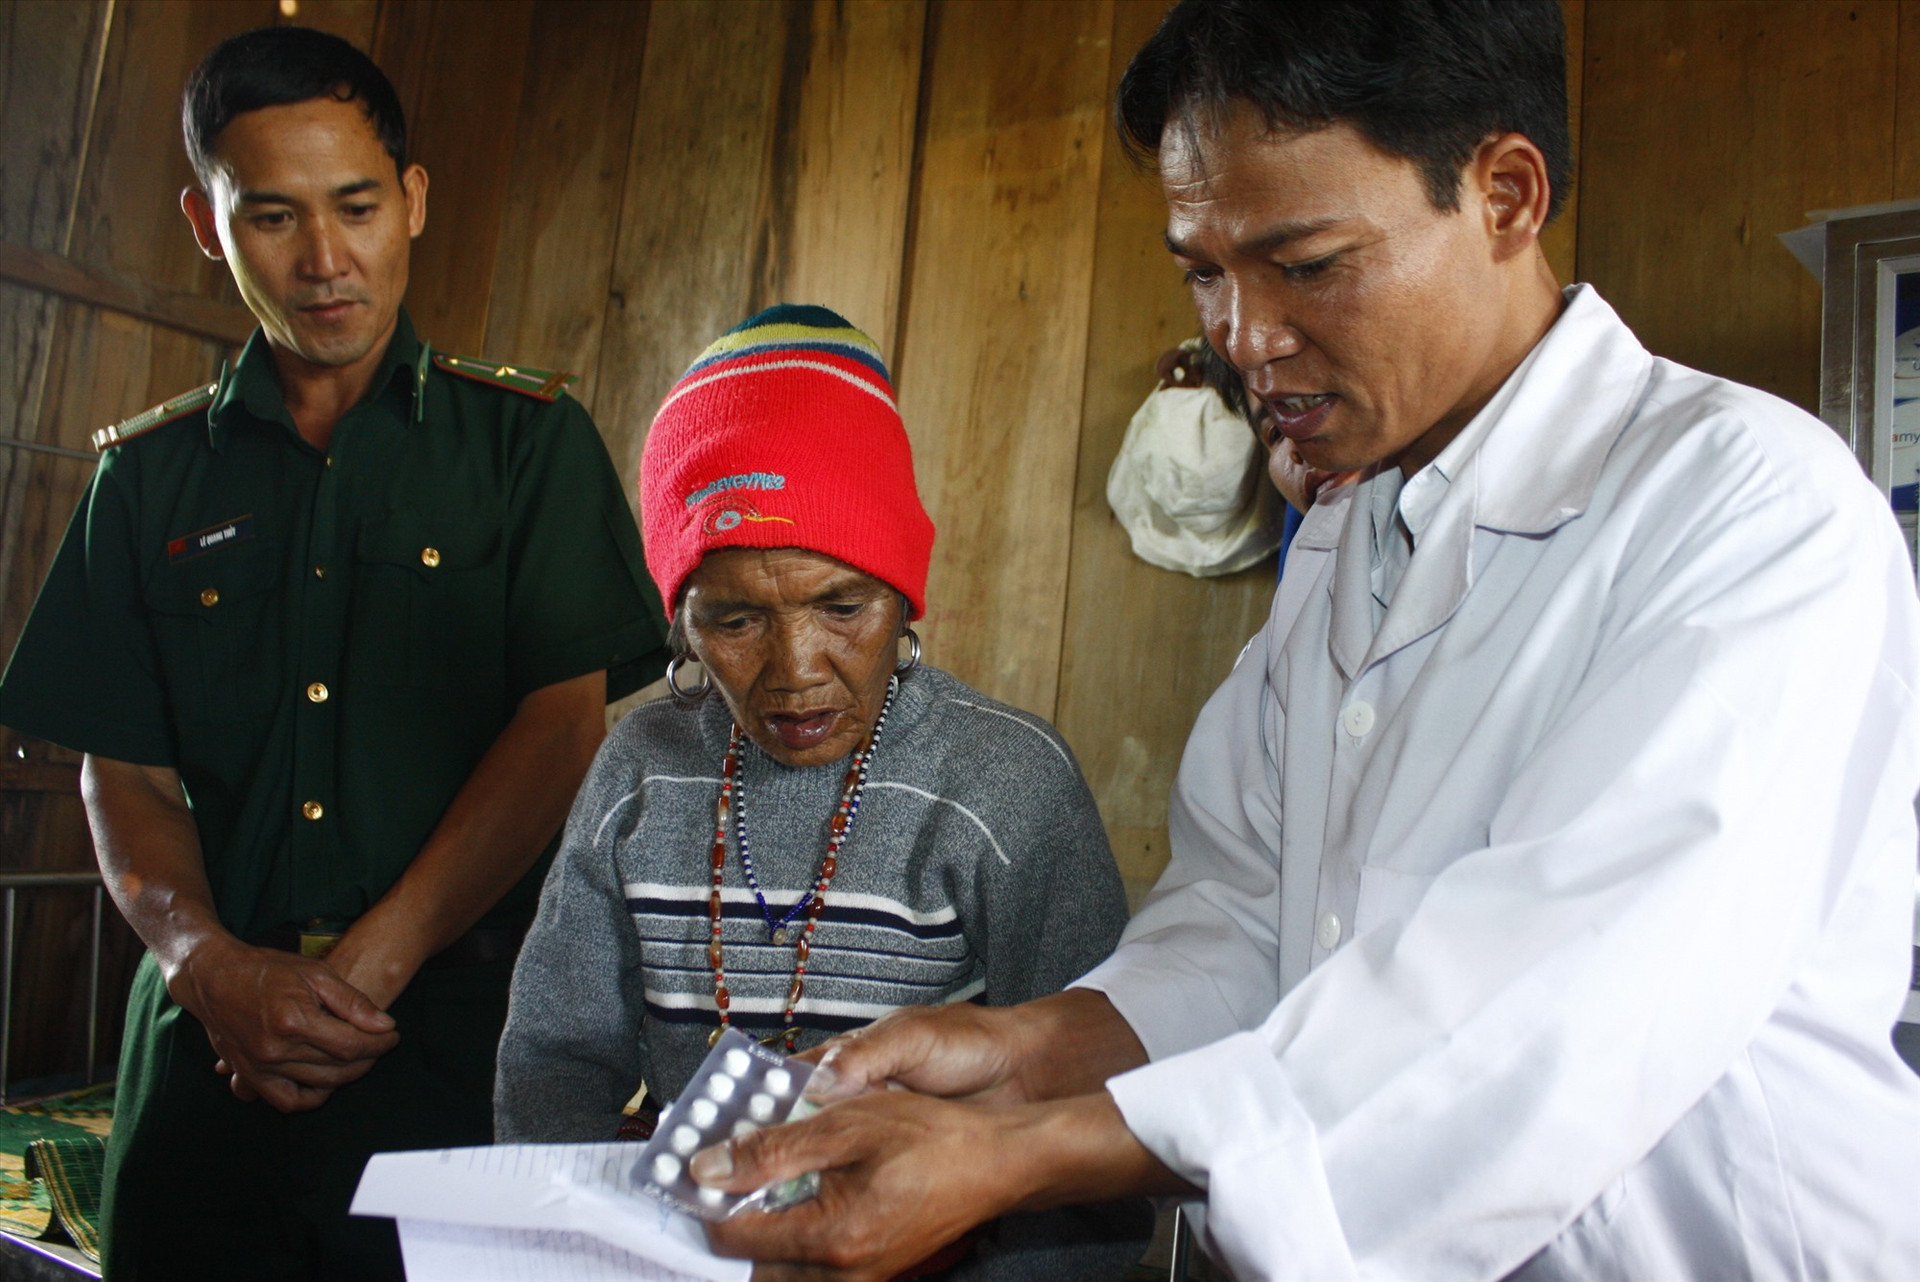 Thiếu nhân viên y tế thôn bản là vấn đề đặt ra hiện nay đối với việc tiếp cận và chăm sóc sức khỏe cho người dân các huyện miền núi trong tỉnh. Ảnh: N.D